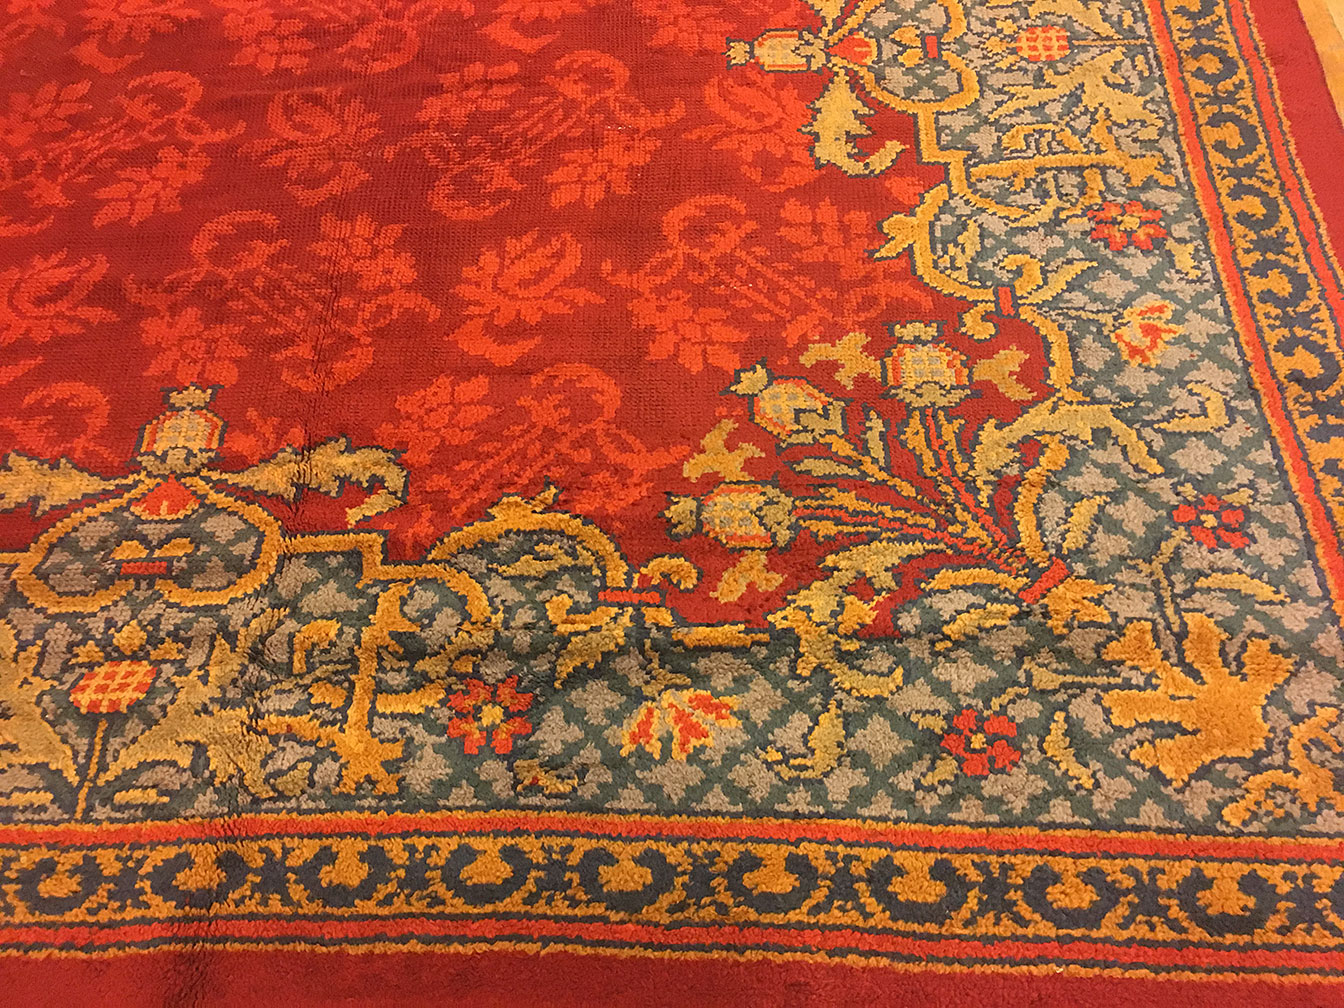 Antique axminster Carpet - # 52410